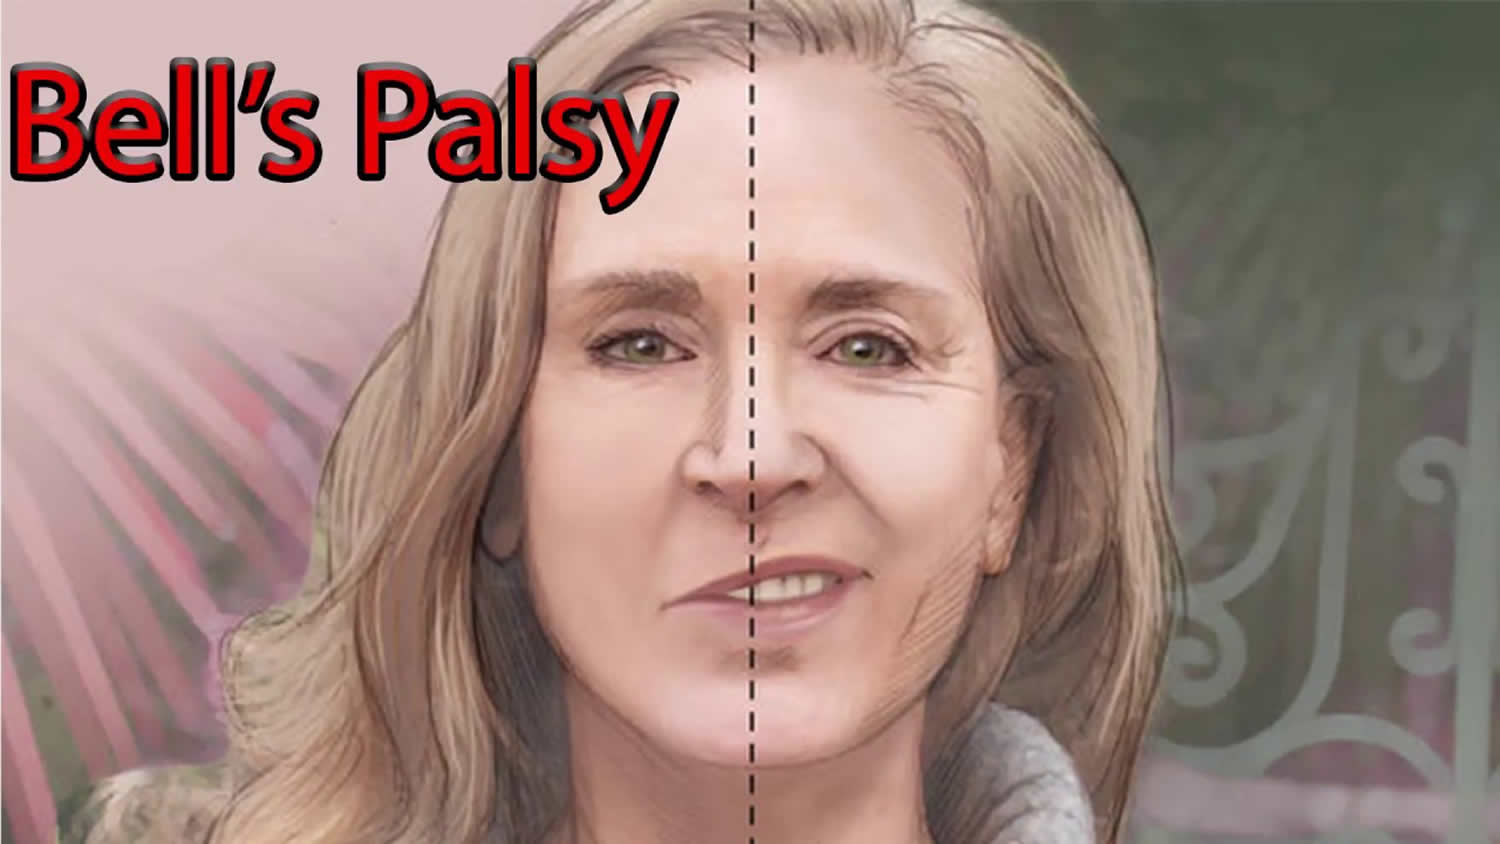 Idiopathic facial palsy